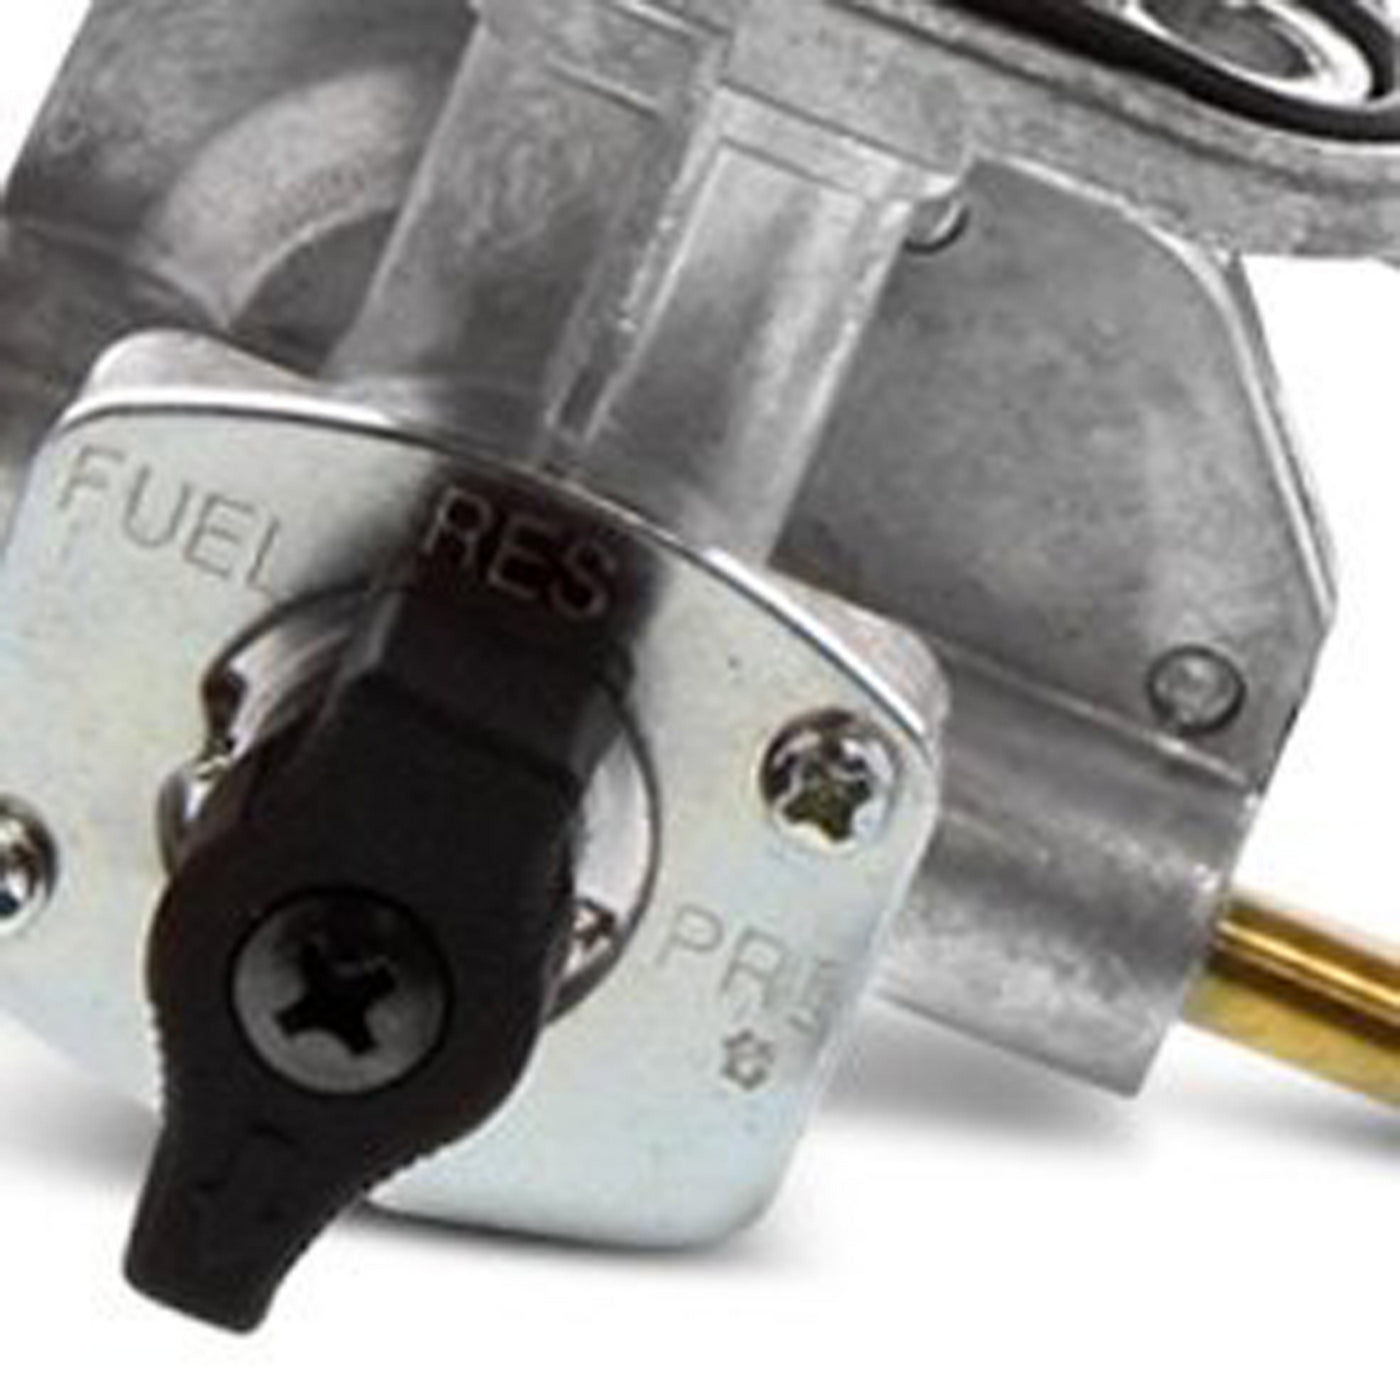 Fuel Star FS101-0103 Fuel Valve Kit #FS101-0103